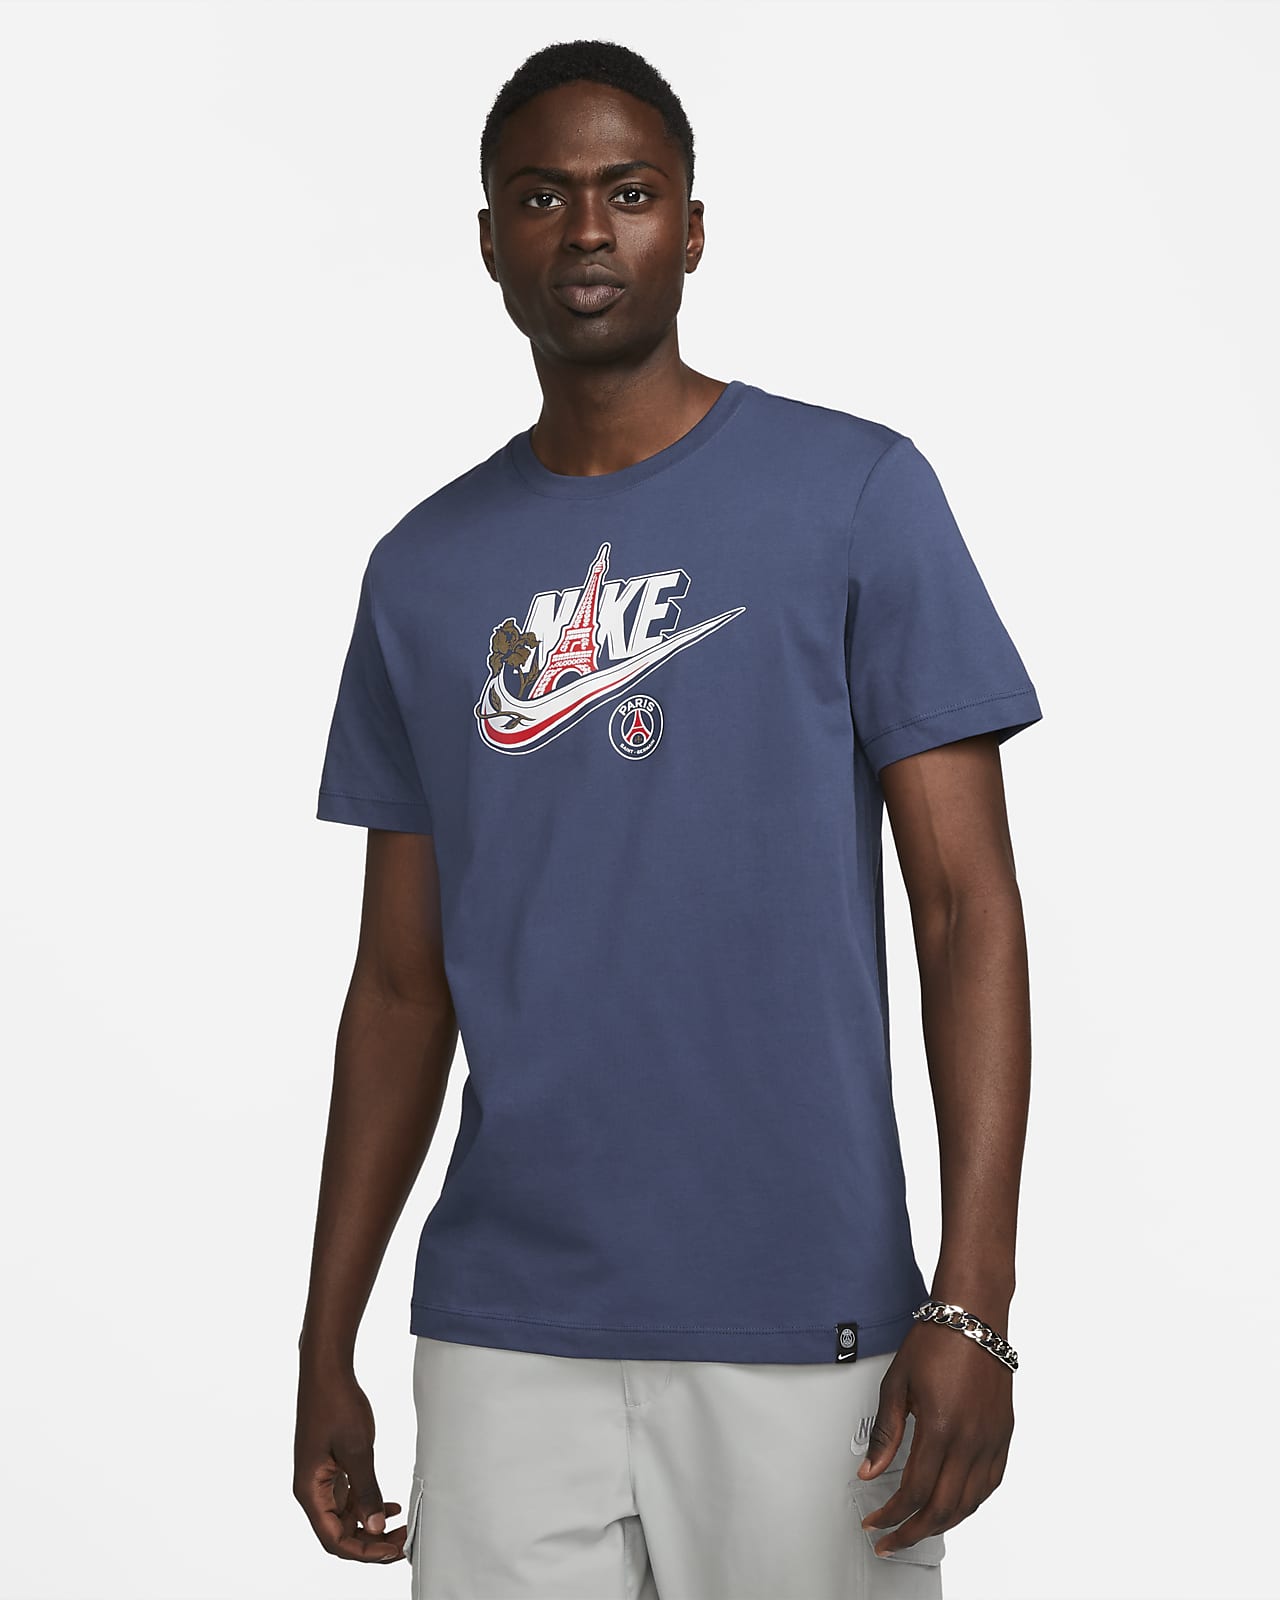 Adolescent Dosering Rose kleur Paris Saint-Germain Men's Nike T-Shirt. Nike LU